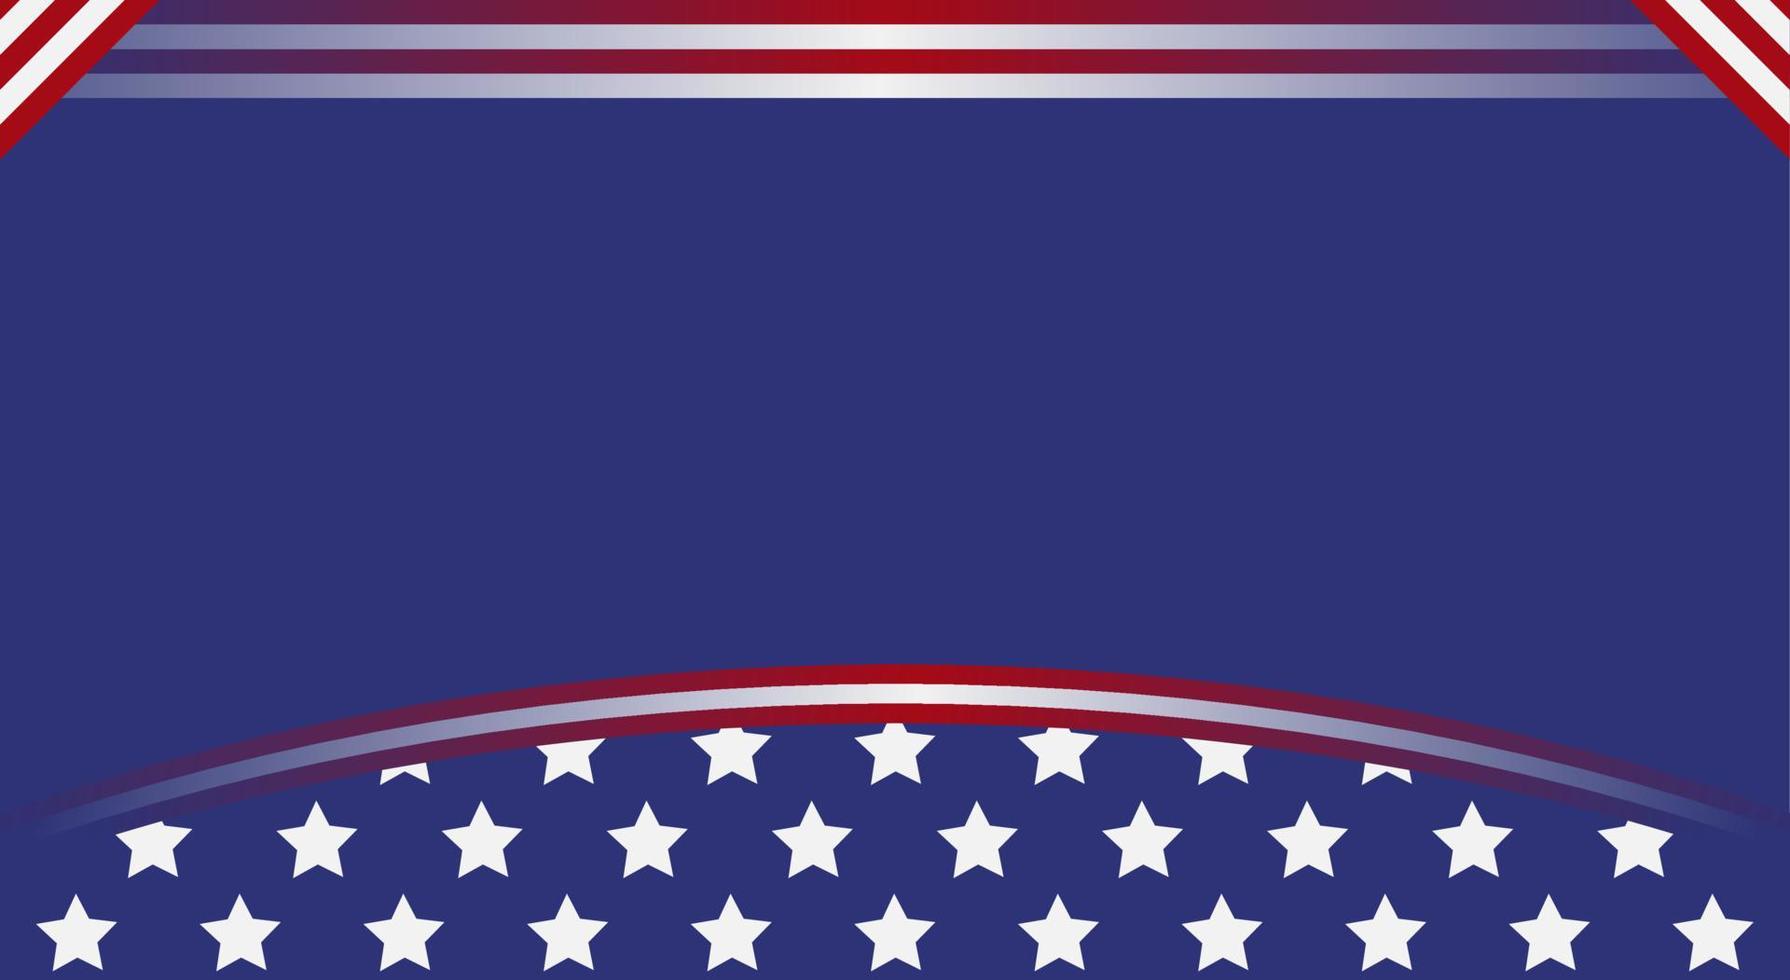 fondo abstracto con elementos de la bandera americana en colores rojo y azul vector